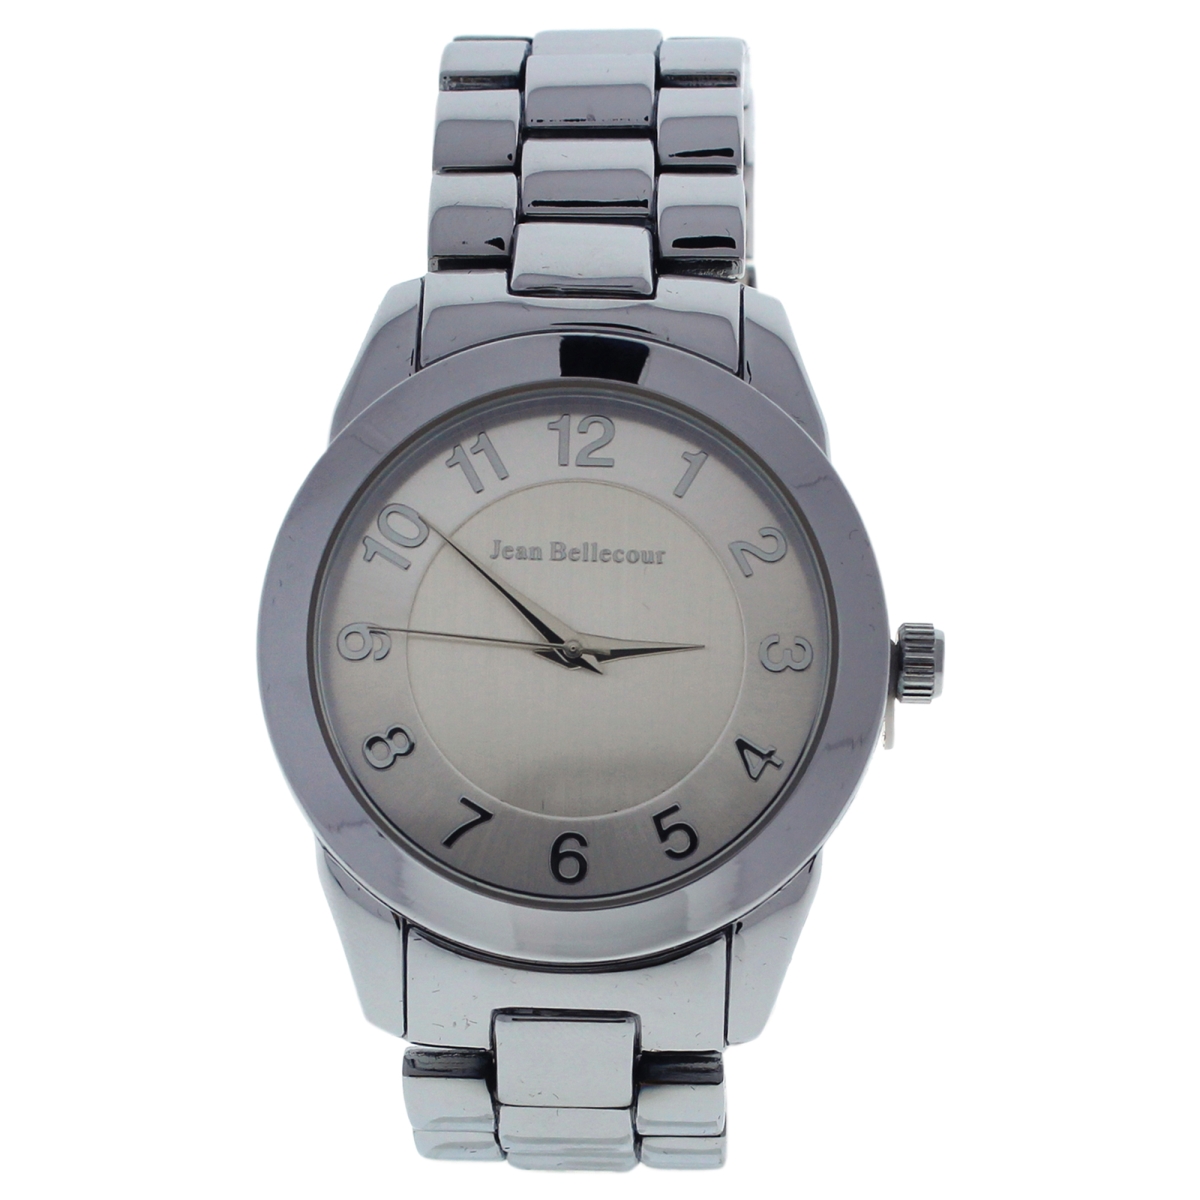 W-wat-1478 Silver Stainless Steel Bracelet Watch For Women - A0372-5